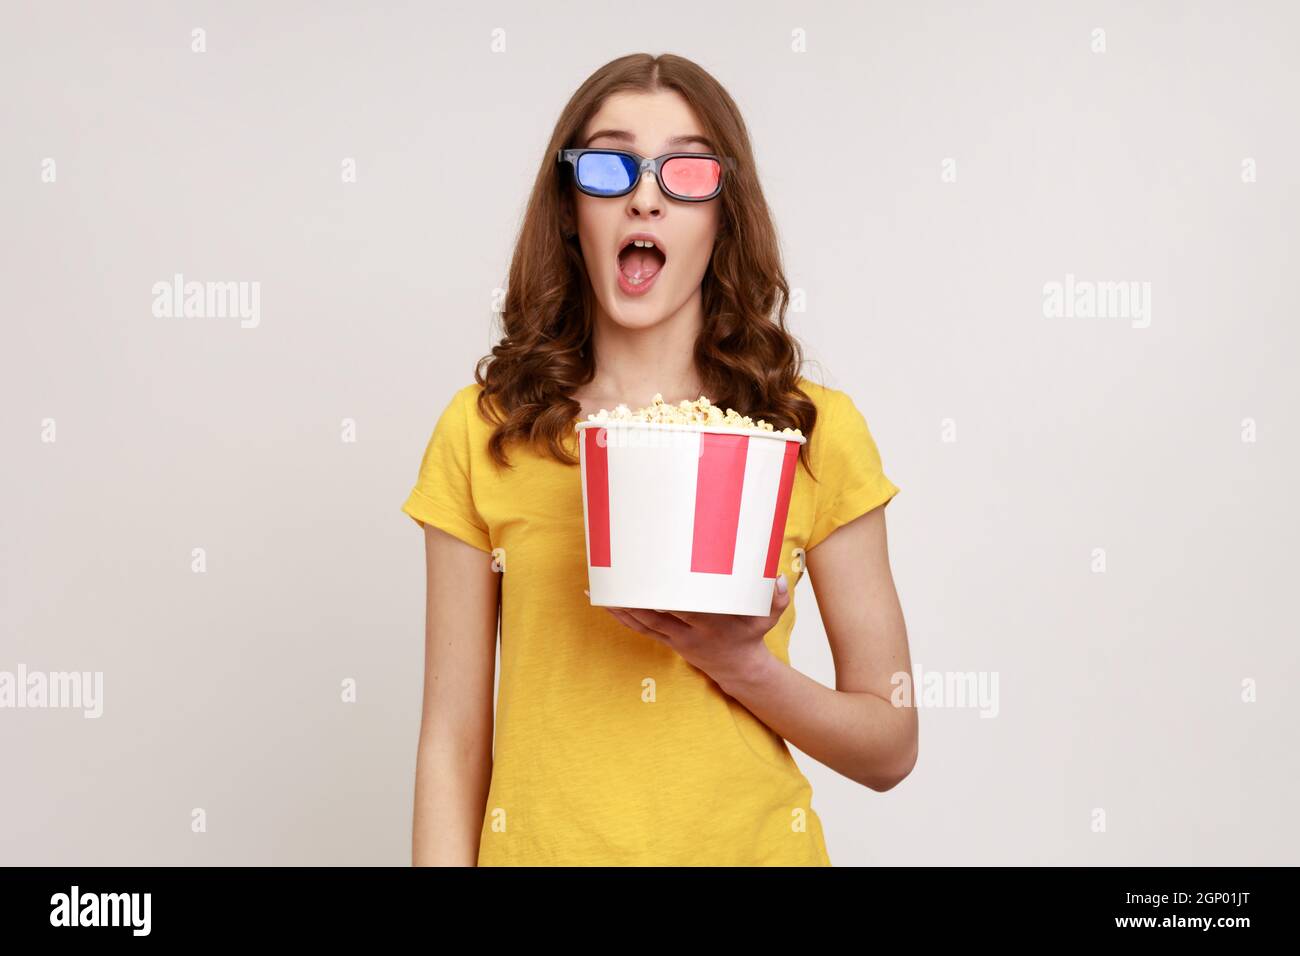 Une jeune femme stupéfiante en lunettes 3d imax regardant un film, tient du  pop-corn, regarde un film incroyable, garde la bouche ouverte, porte un  T-shirt jaune. Prise de vue en studio isolée